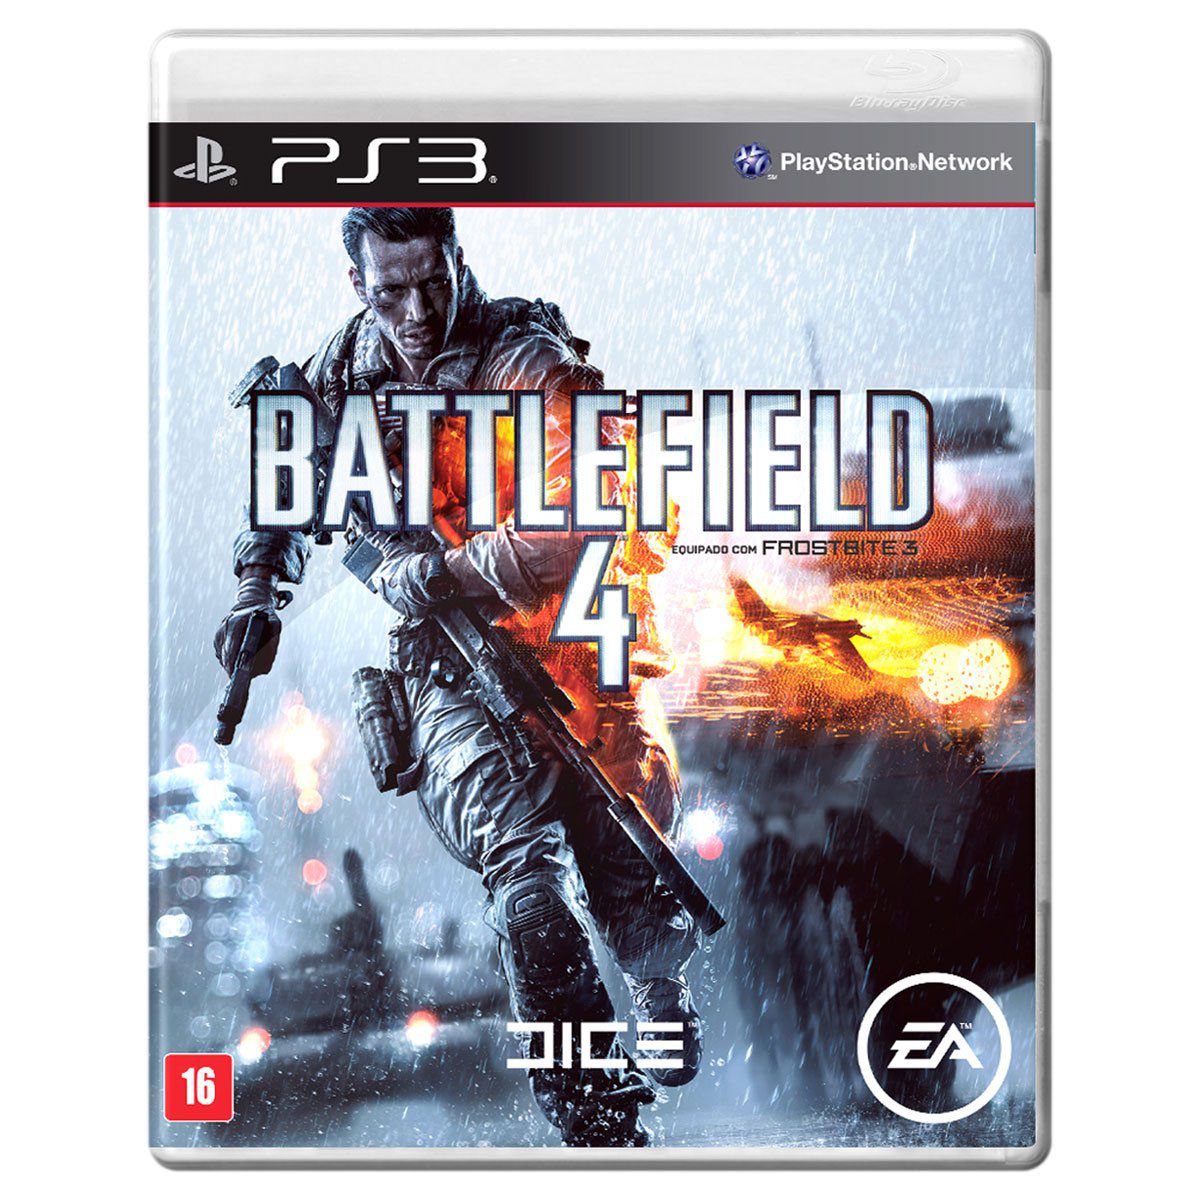 Battlefield 2042 ganha novos gameplays recheados de ação